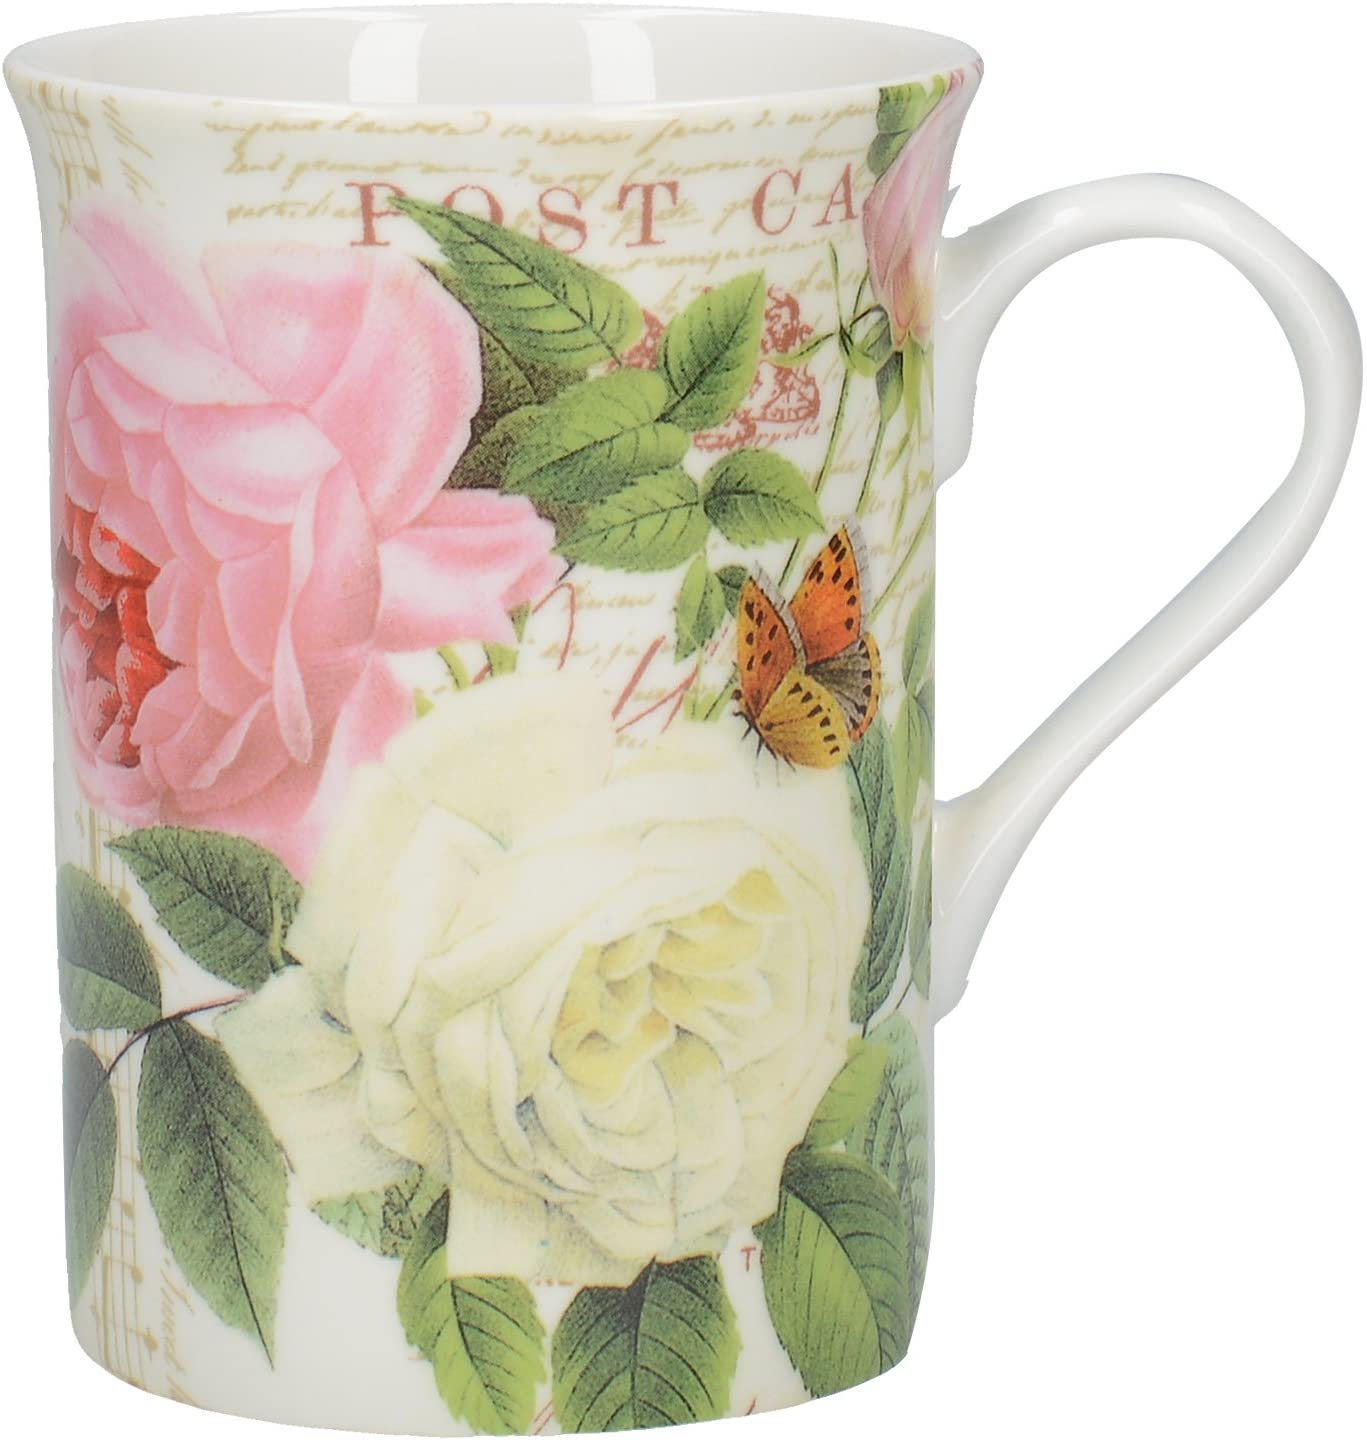 Creative Tops Rose Garden Fine Bone China Mug in Gift Box, 8 fl oz